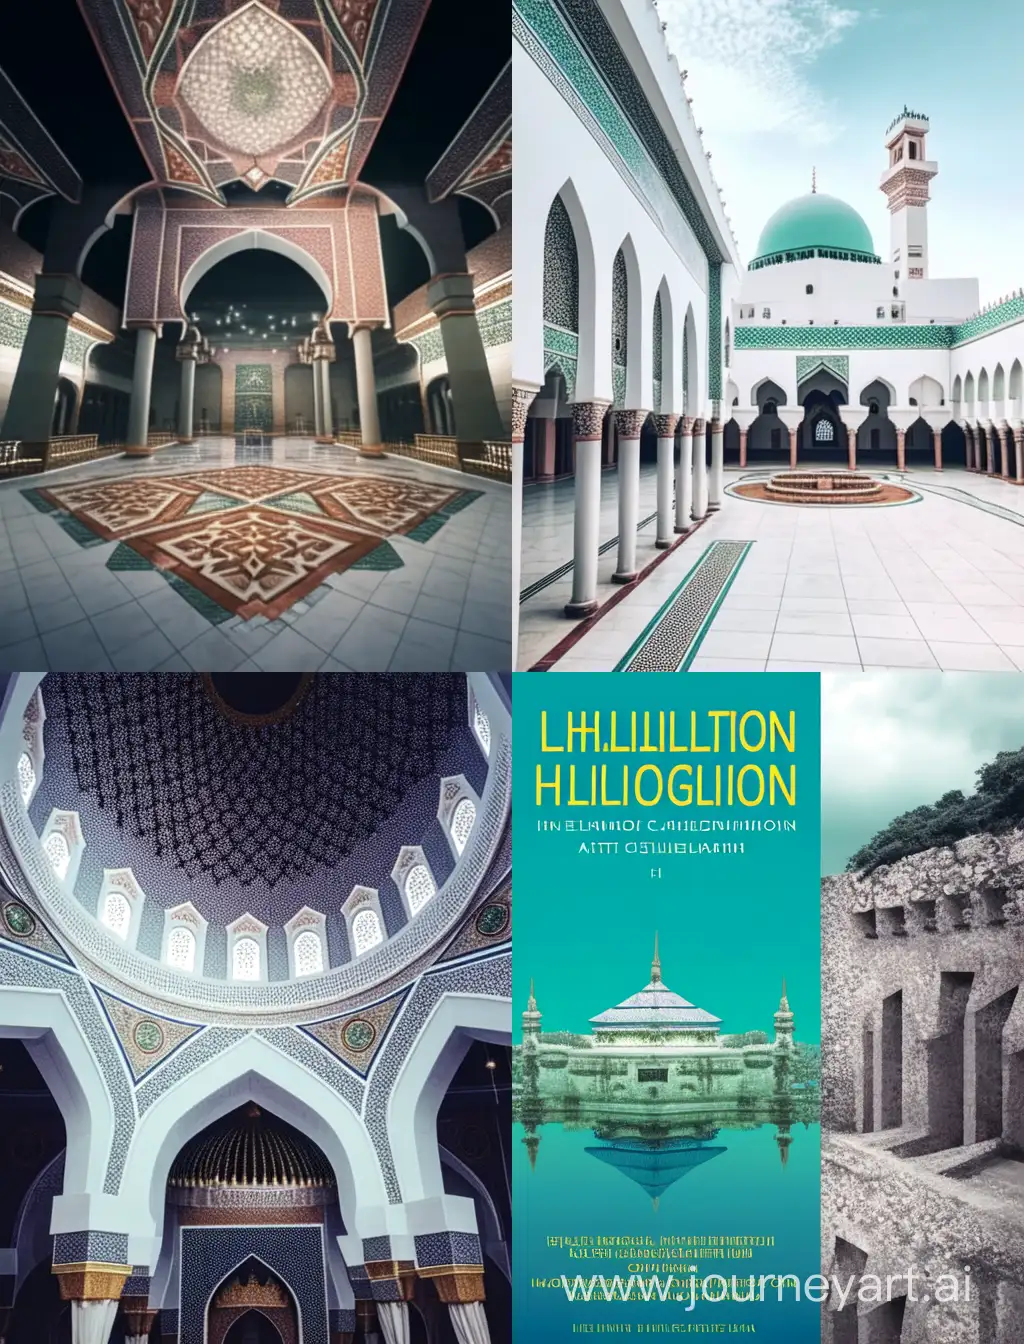 بين الإيمان والعمران.. مؤسسة الحِسبة الإسلامية وأدوارها الحضارية